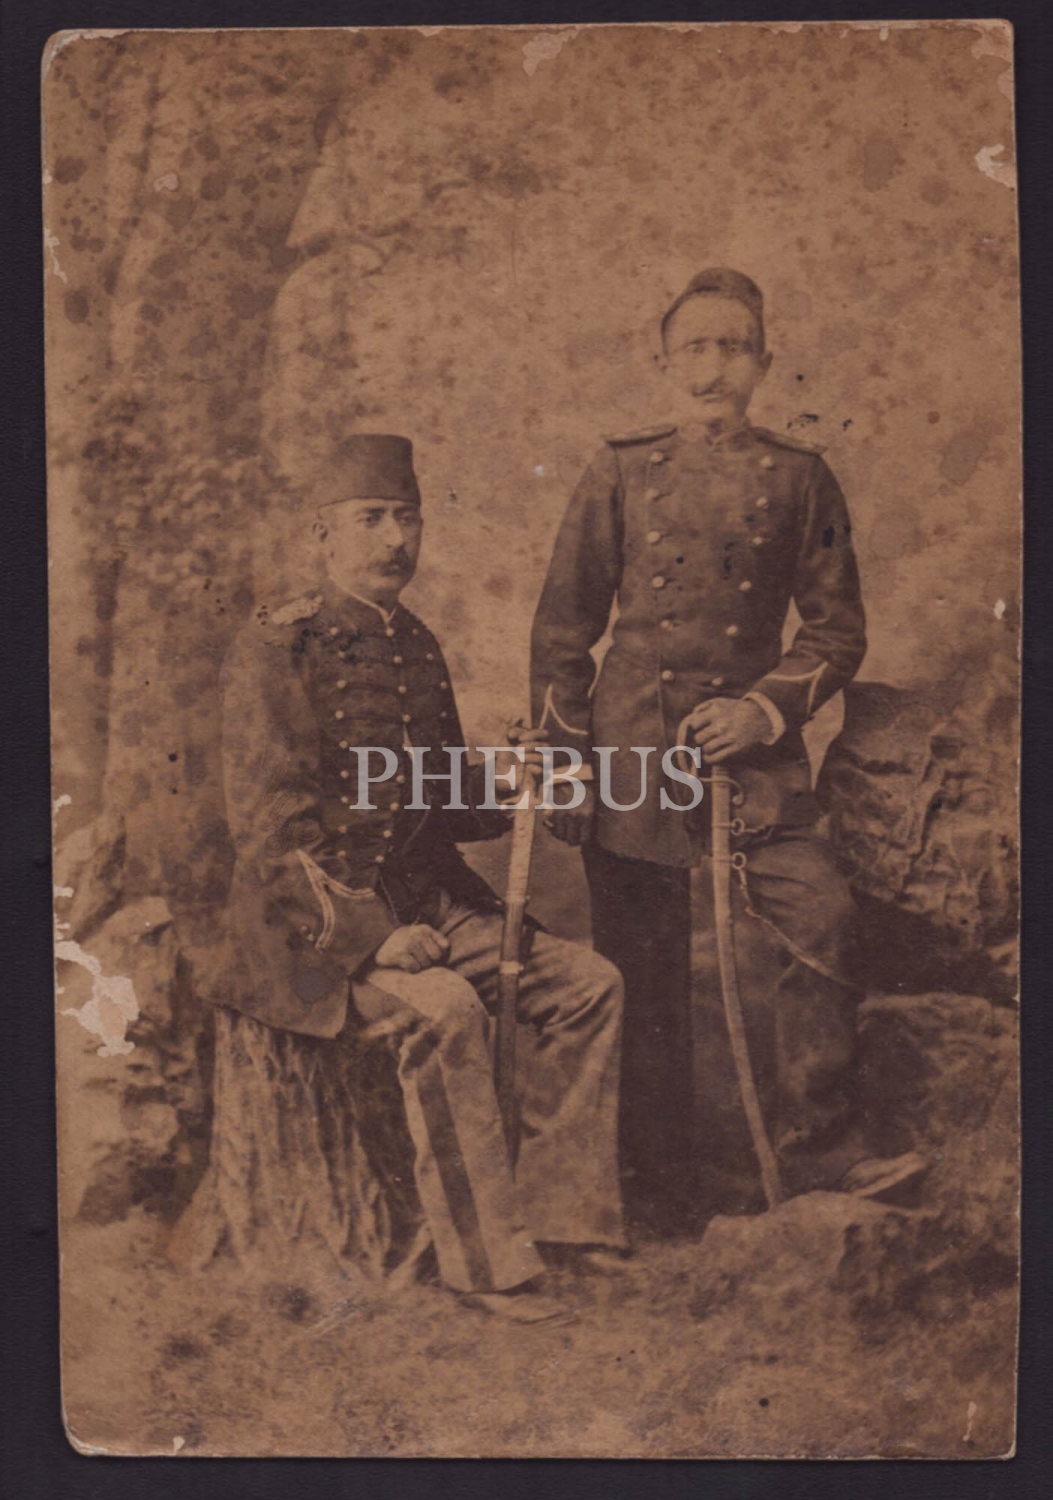 İki Osmanlı subayının 